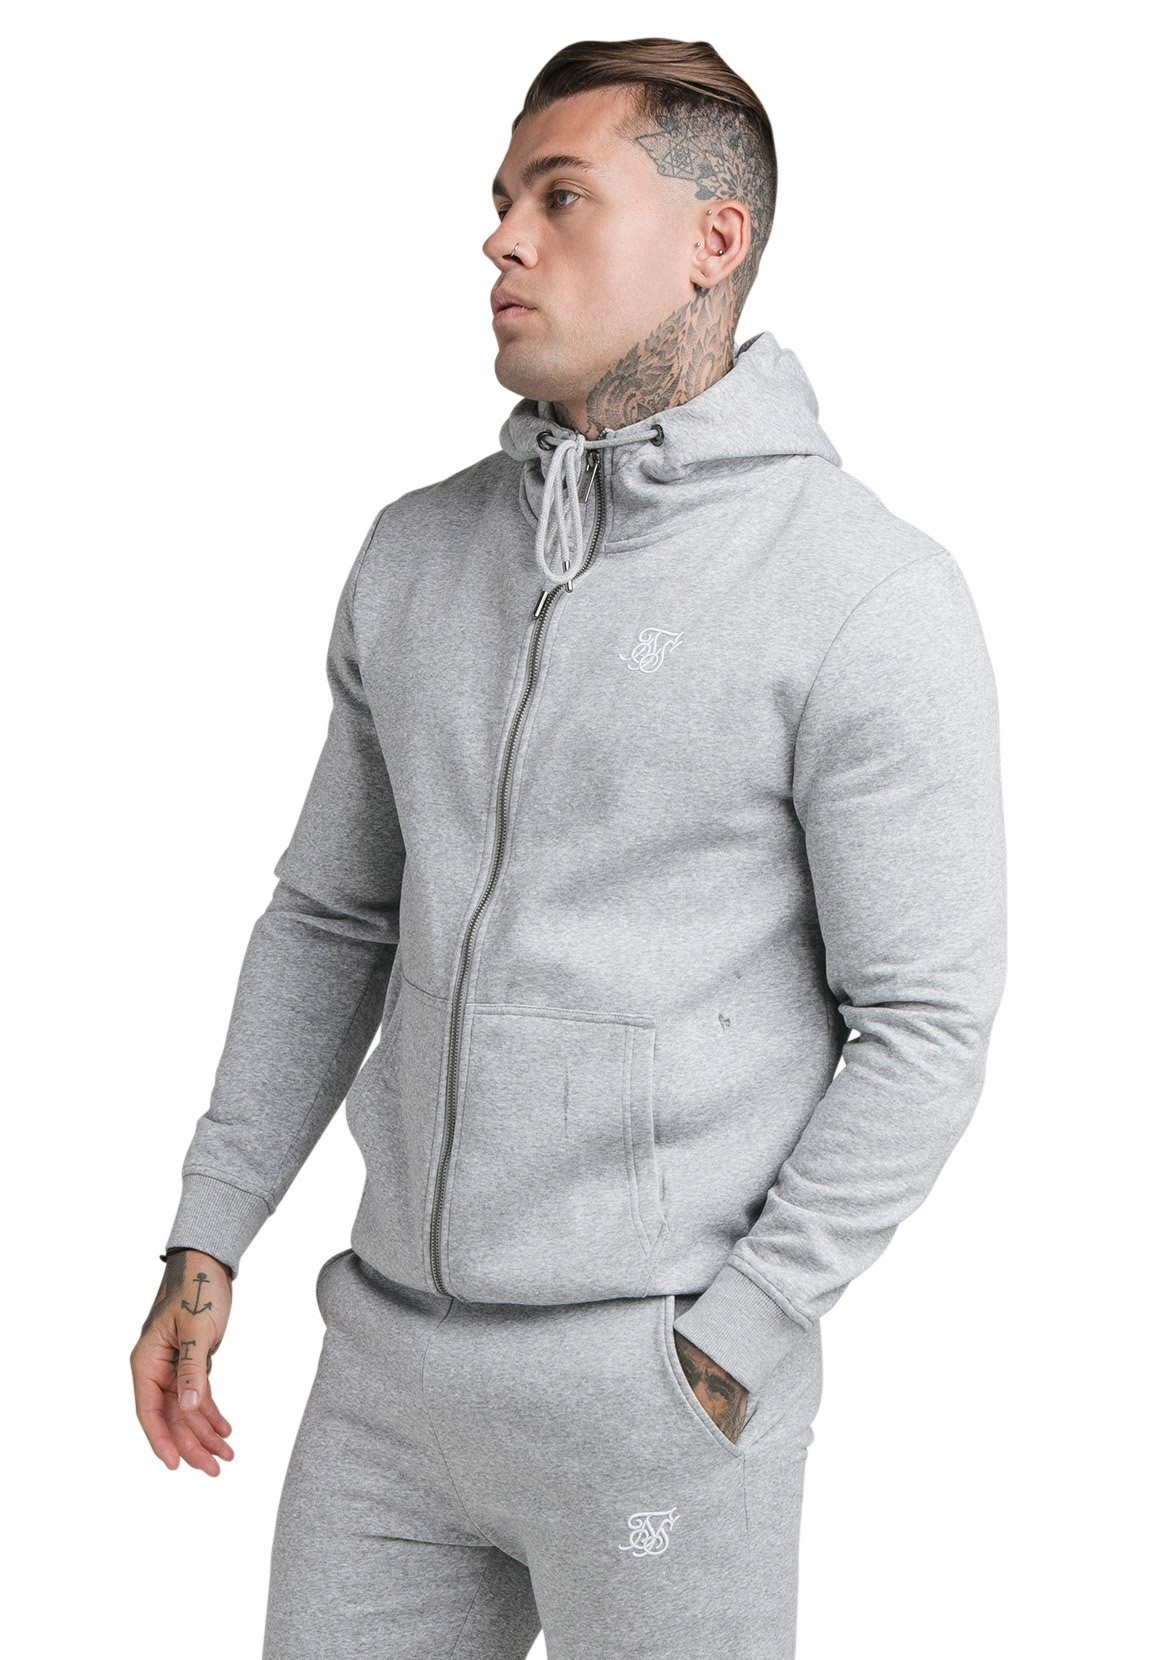 Sweater HOODIE Grey CORE Marl Herren ZIP FUNNEL SikSilk Siksilk NECK SS-18909 Zipper